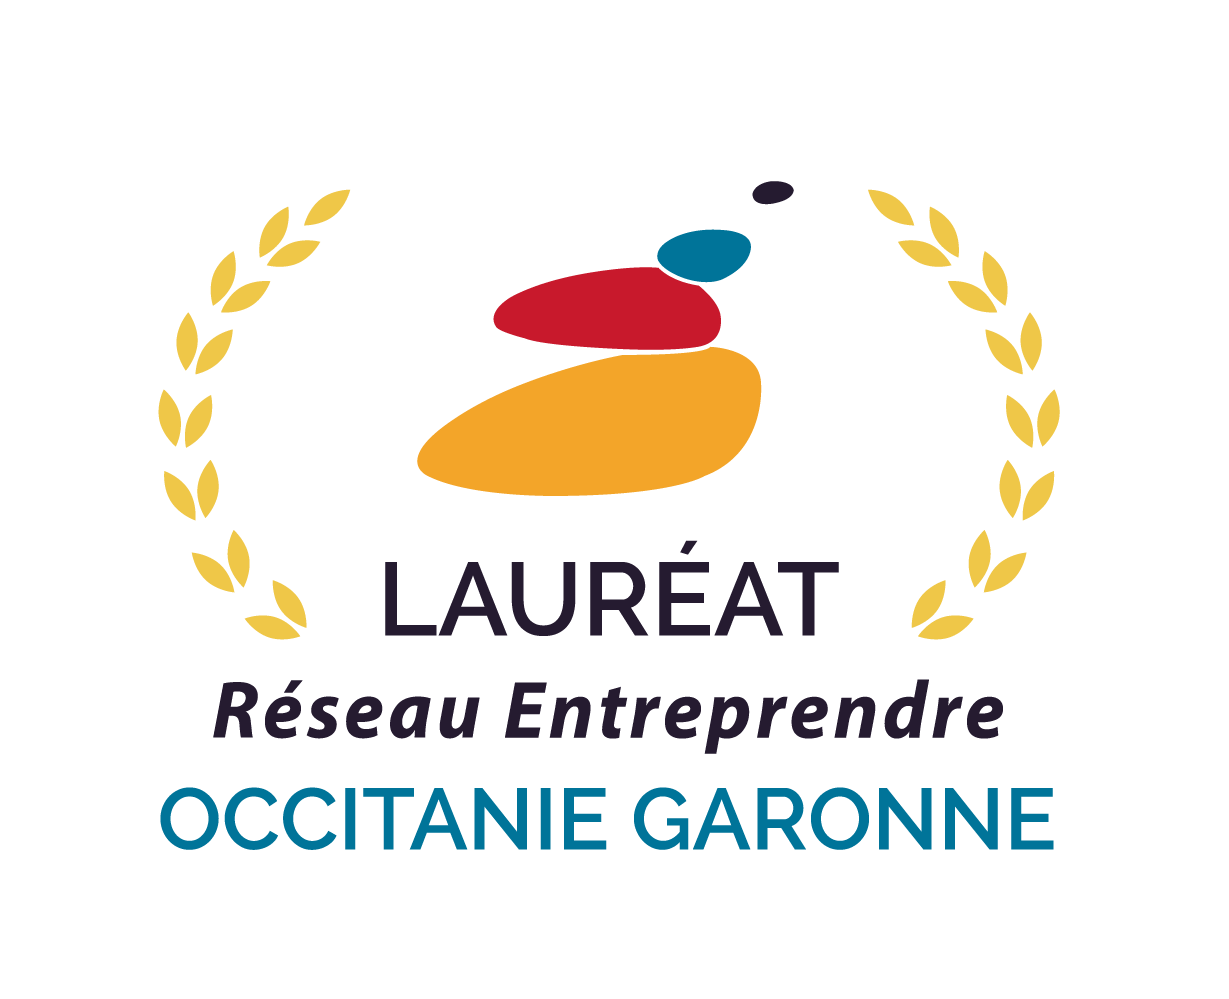 Lauréat Réseau Entreprendre Occitane Garonne